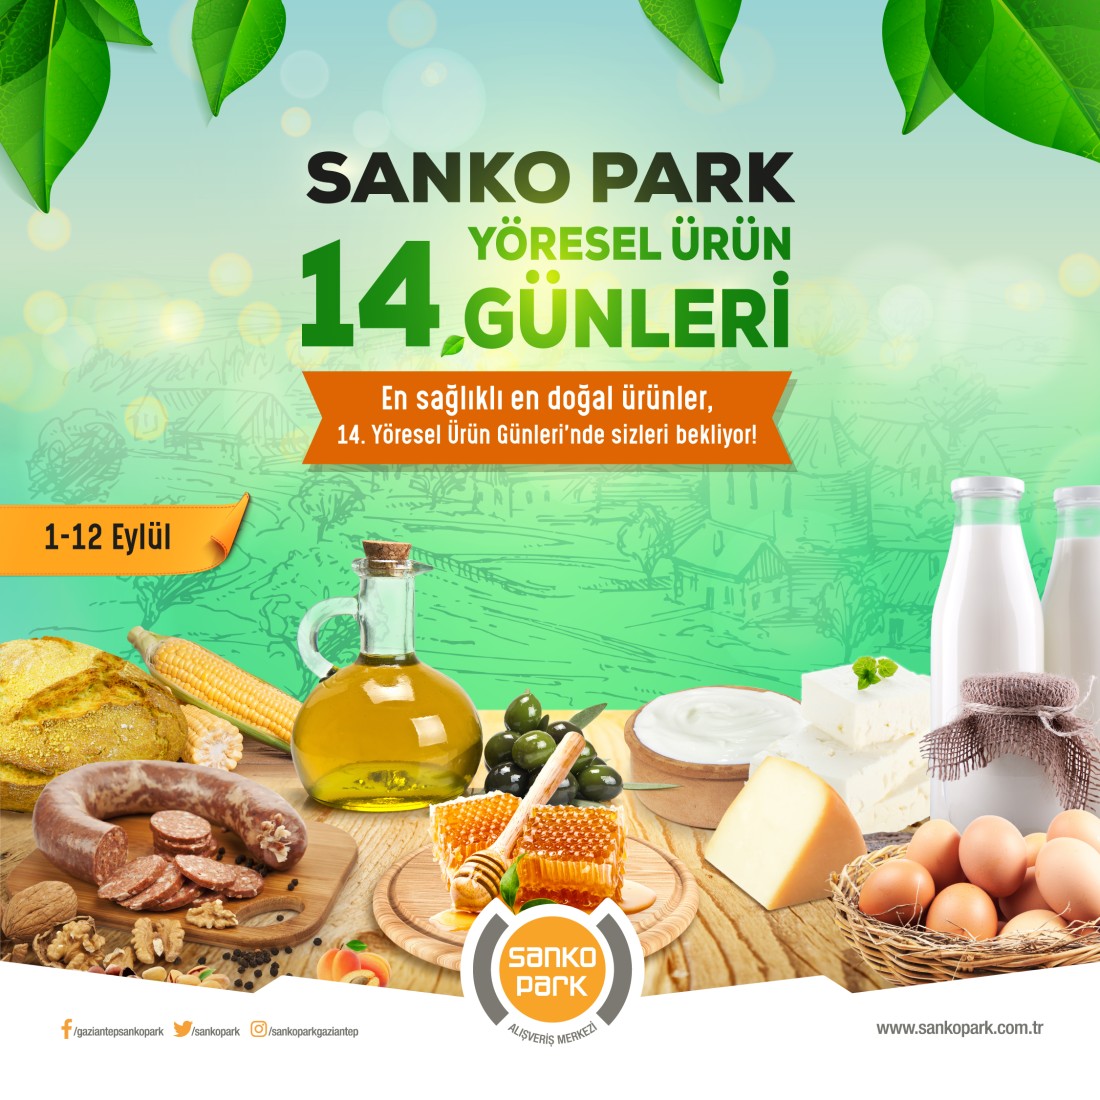 14’ üncü Yöresel Ürün Günleri SANKO Park’ta